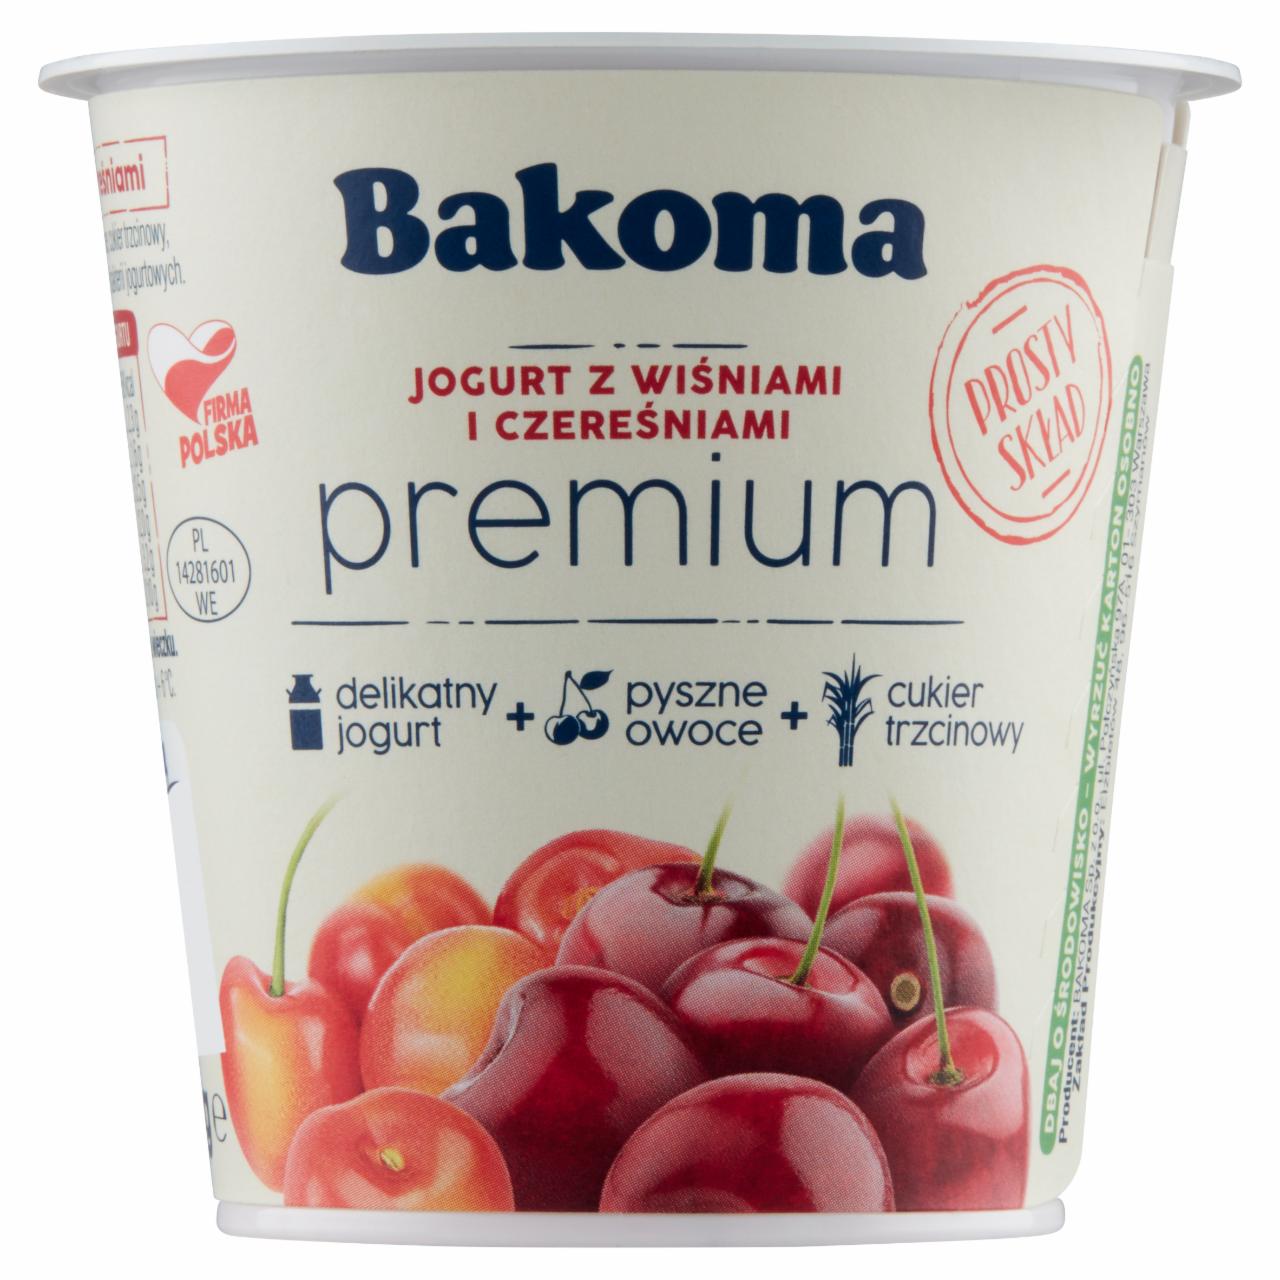 Zdjęcia - Bakoma Premium Jogurt z wiśniami i czereśniami 140 g